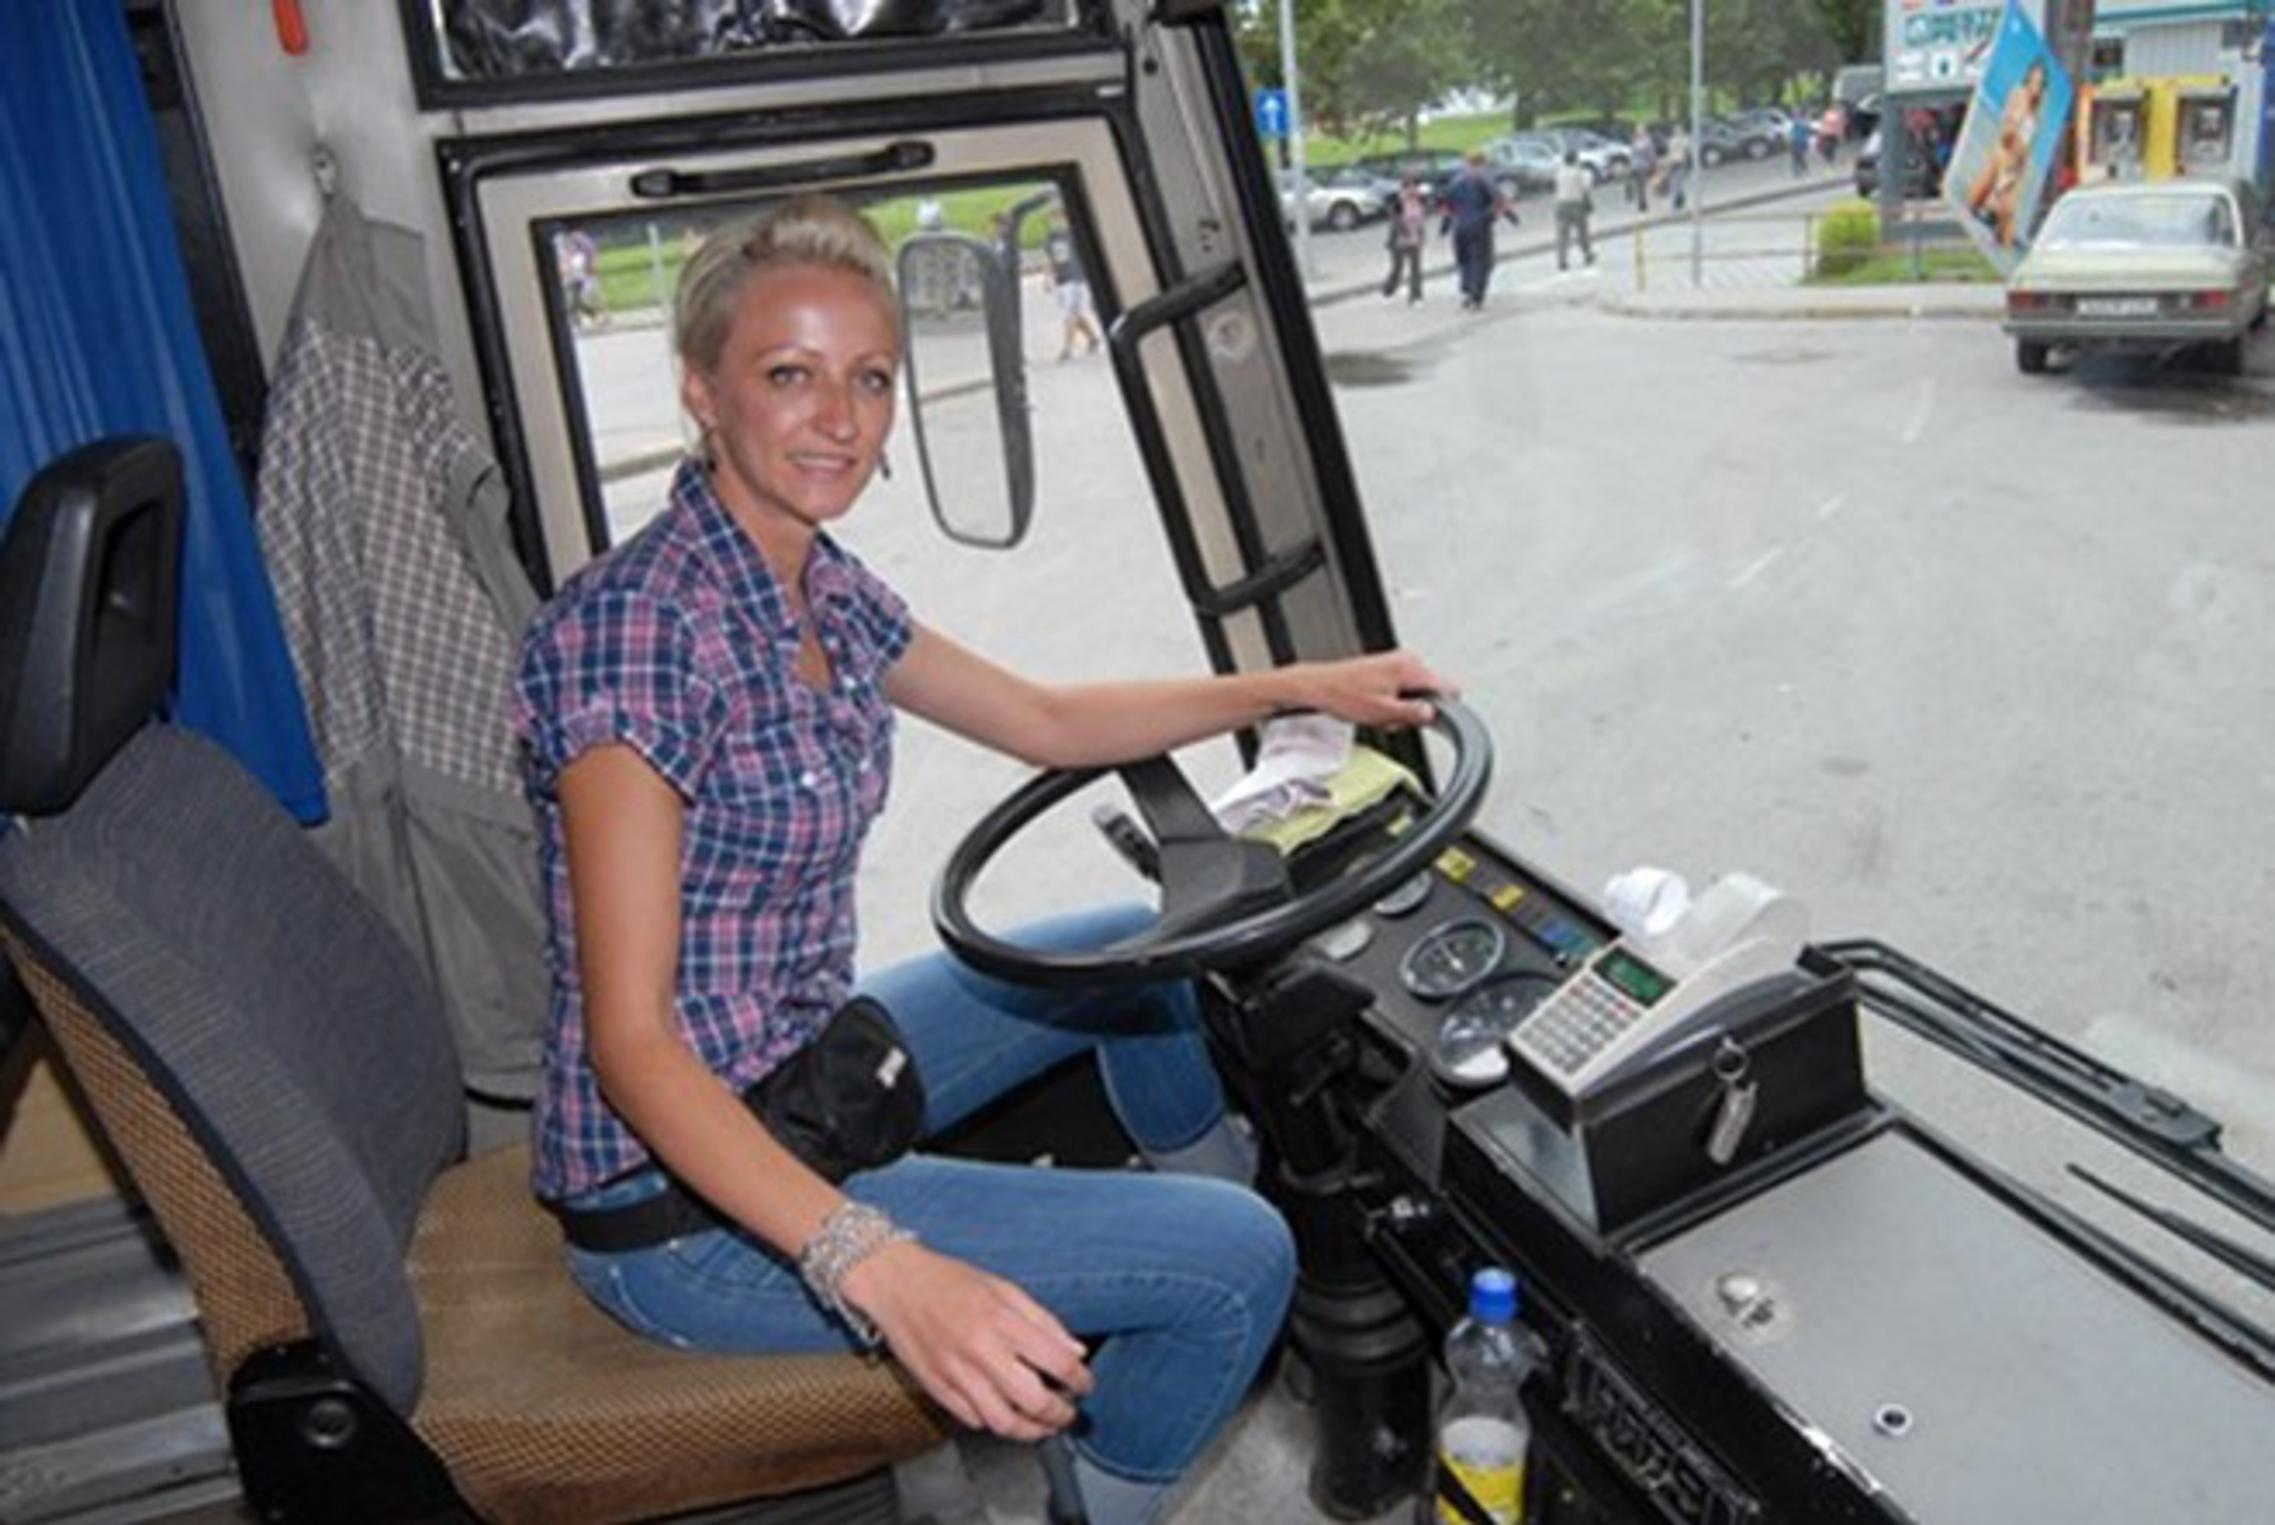 Nakon autobusa, Milijana Blažević uskoro će sjesti i za upravljač kamiona